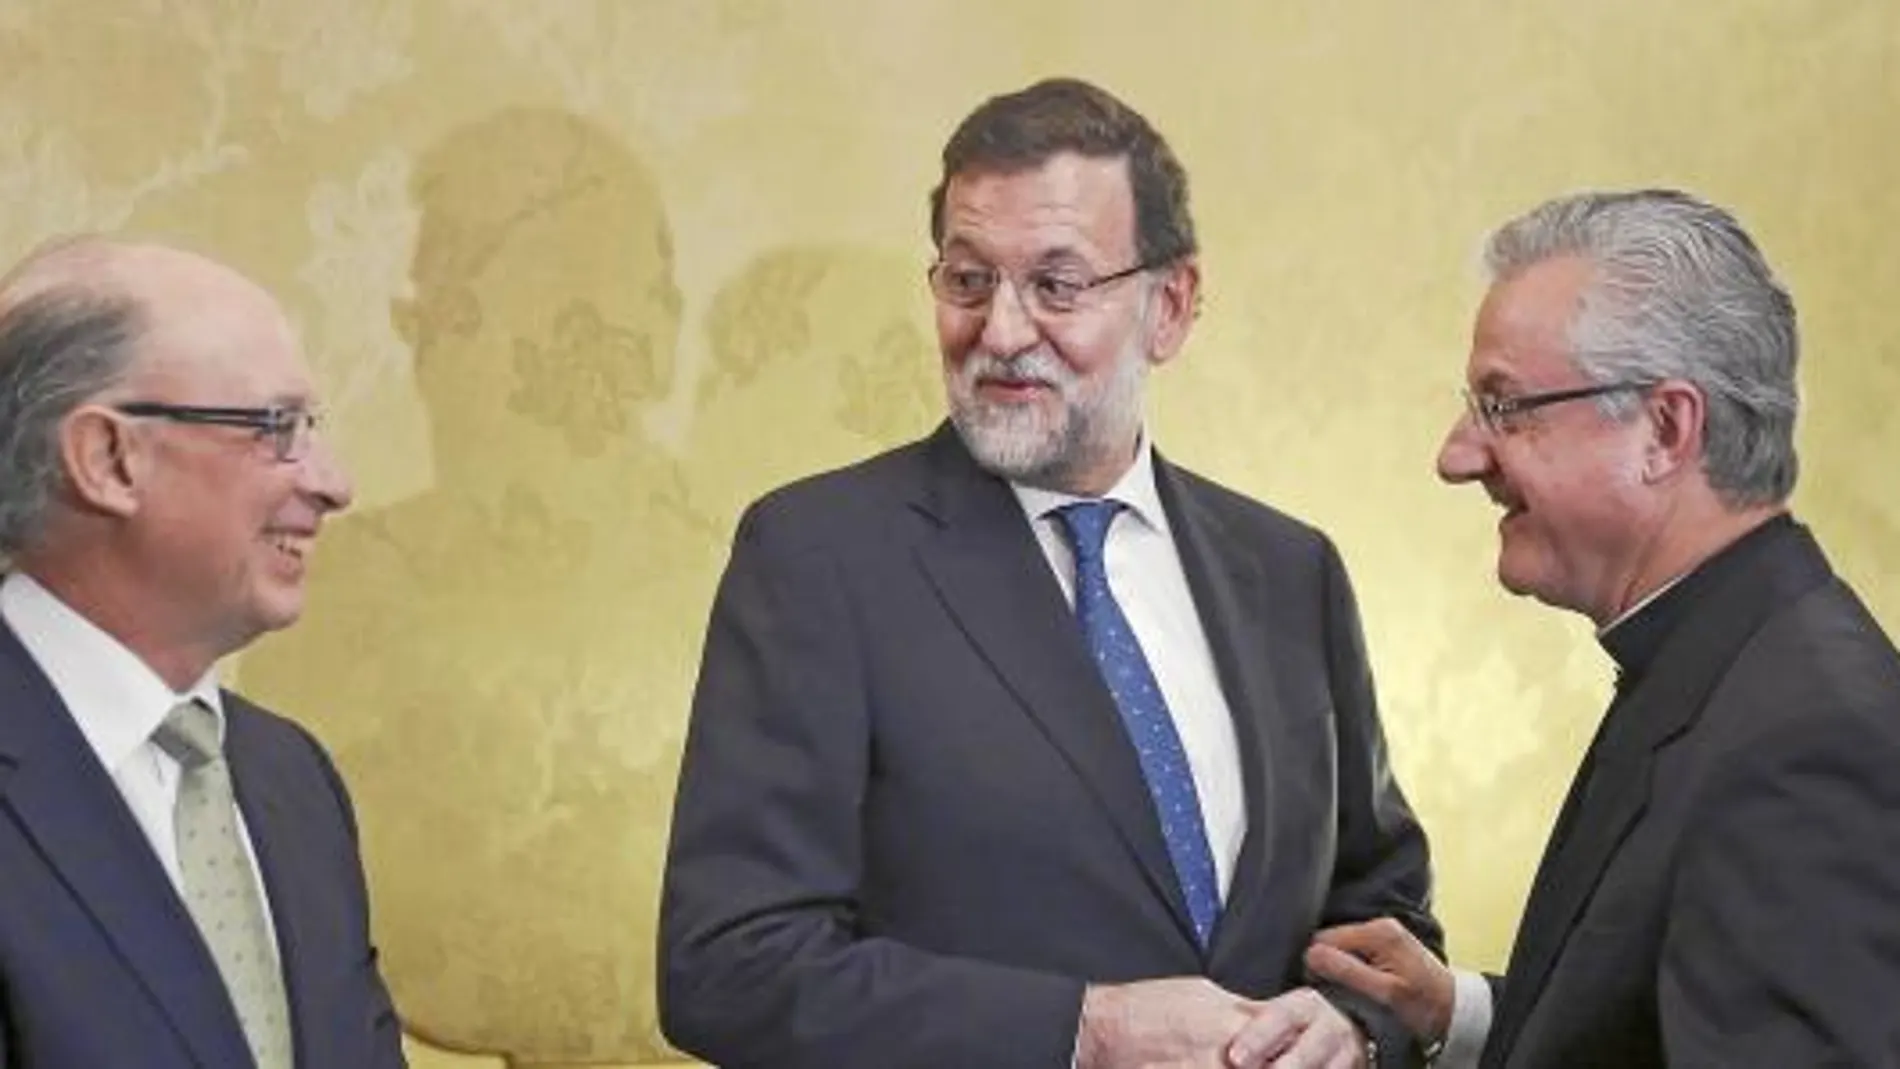 Mariano Rajoy, al que acompañaba el ministro Cristóbal Montoro, mantuvo un encuentro con Monseñor Joan Enric Vives, arzobispo de la Seo de Urgell y Copríncipe (junto al presidente de la República francesa) de Andorra.